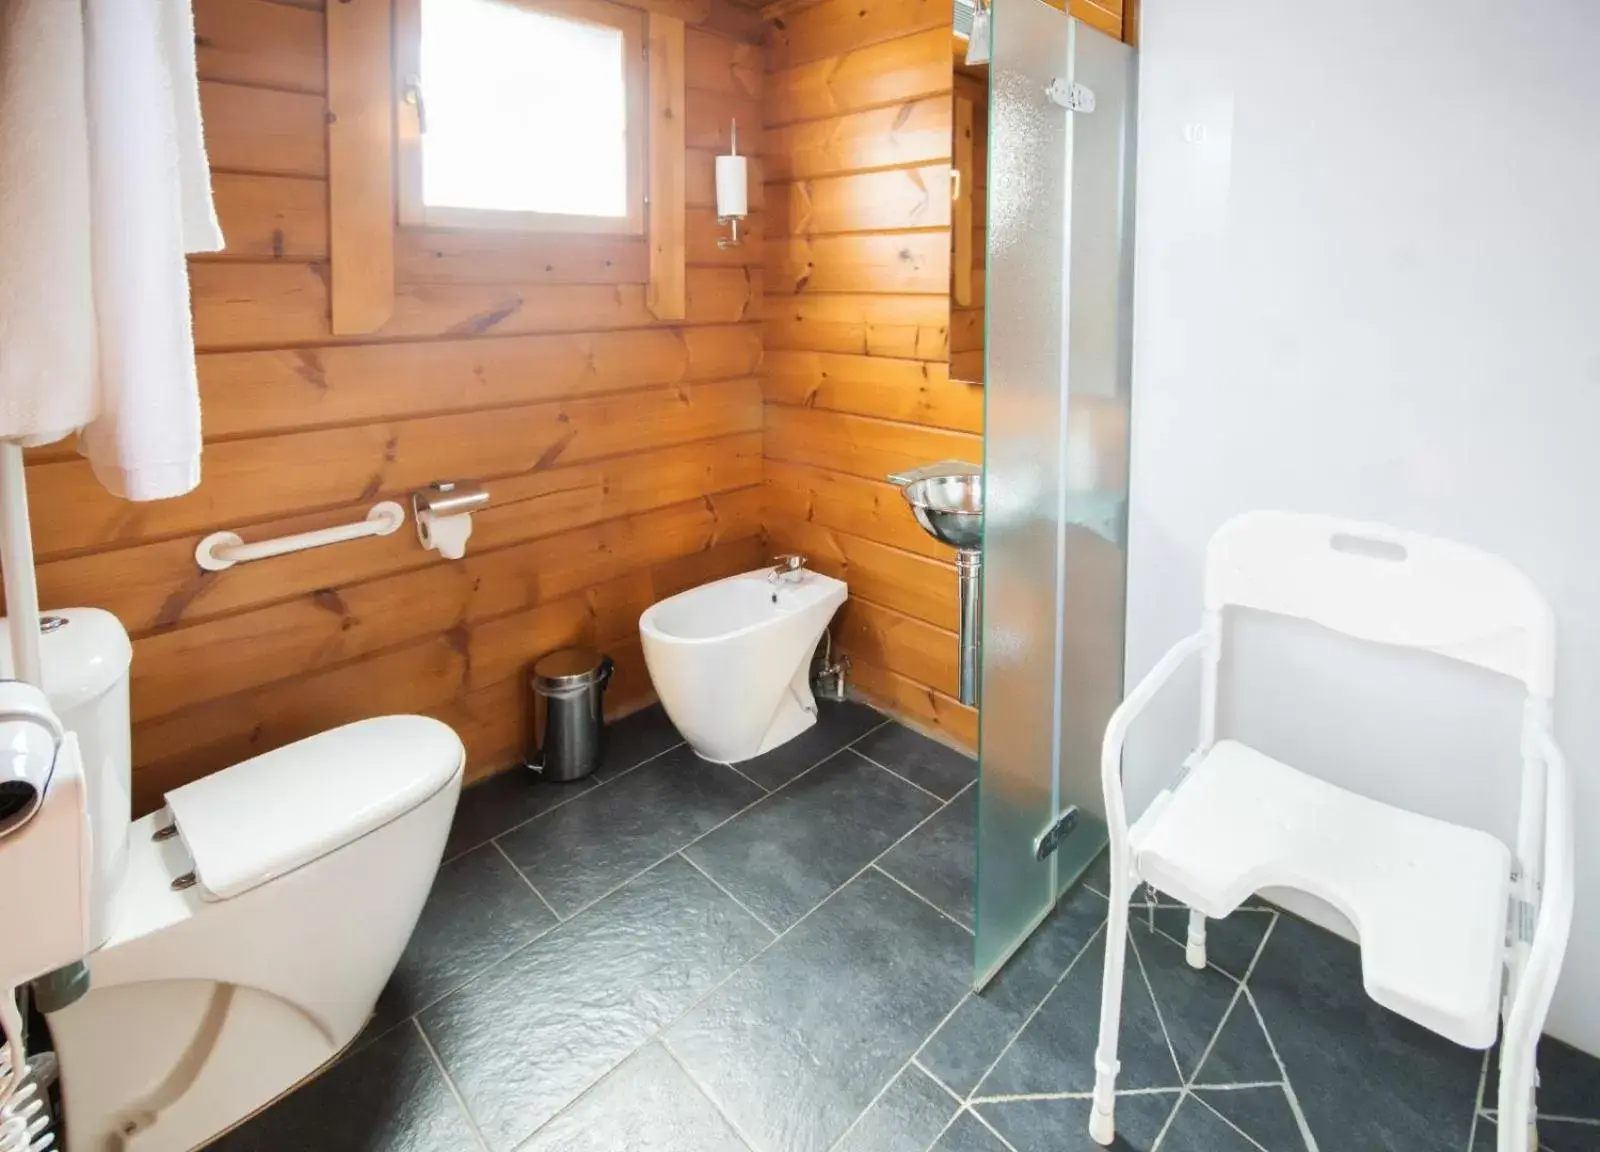 Bathroom in Hotel Somlom - ECO Friendly Montseny